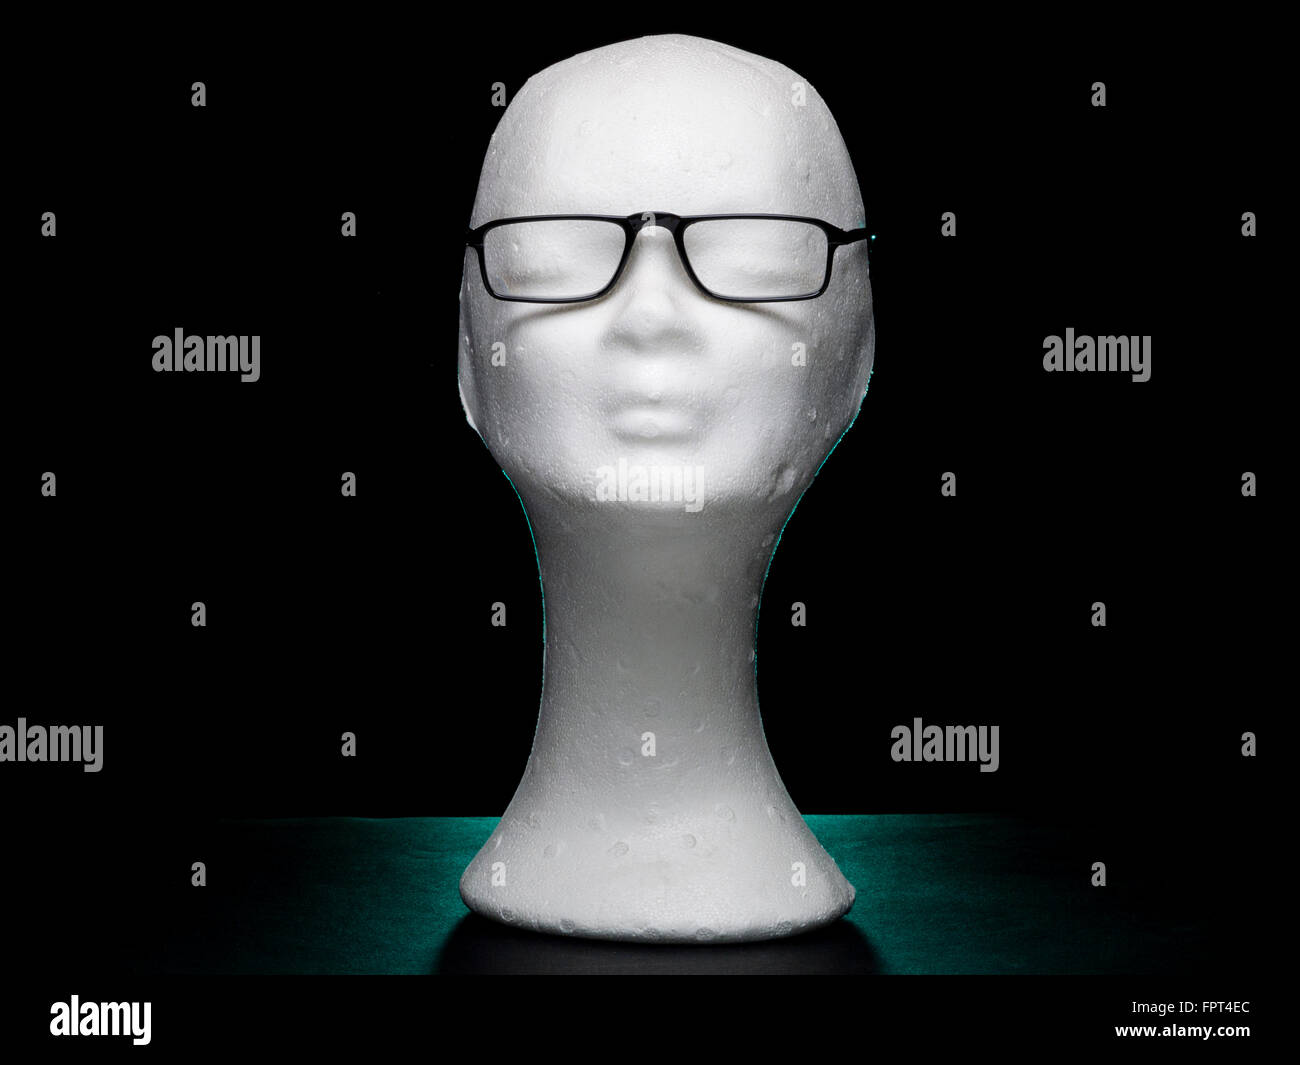 White dummy female head with eyeglasses on black background Stock Photo